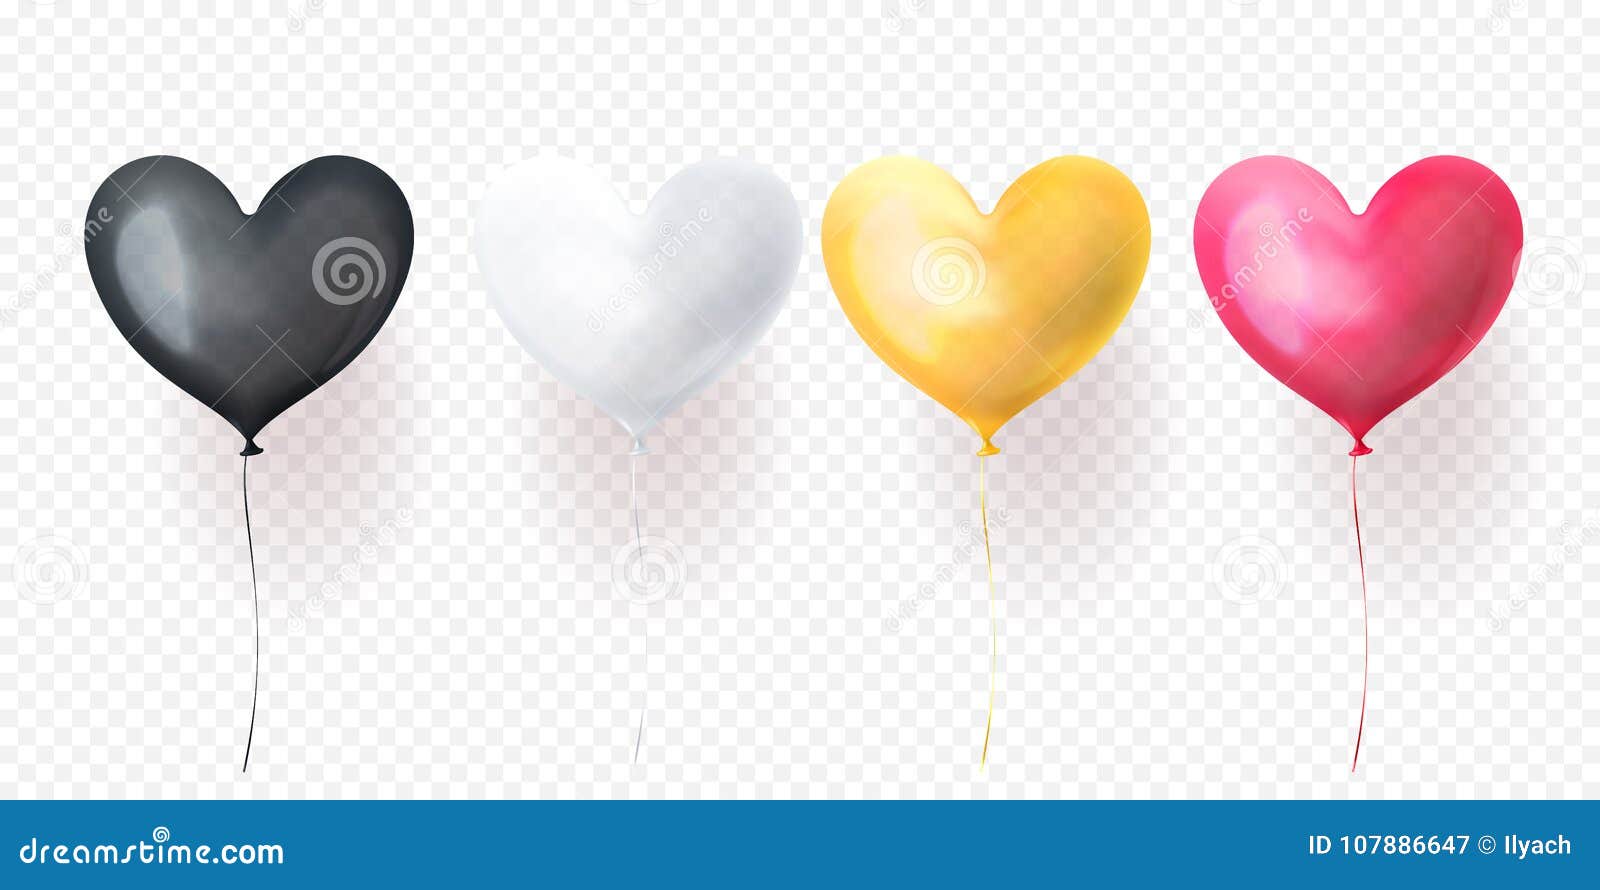 Poster Transparents ballons d'anniversaire en forme de coeur